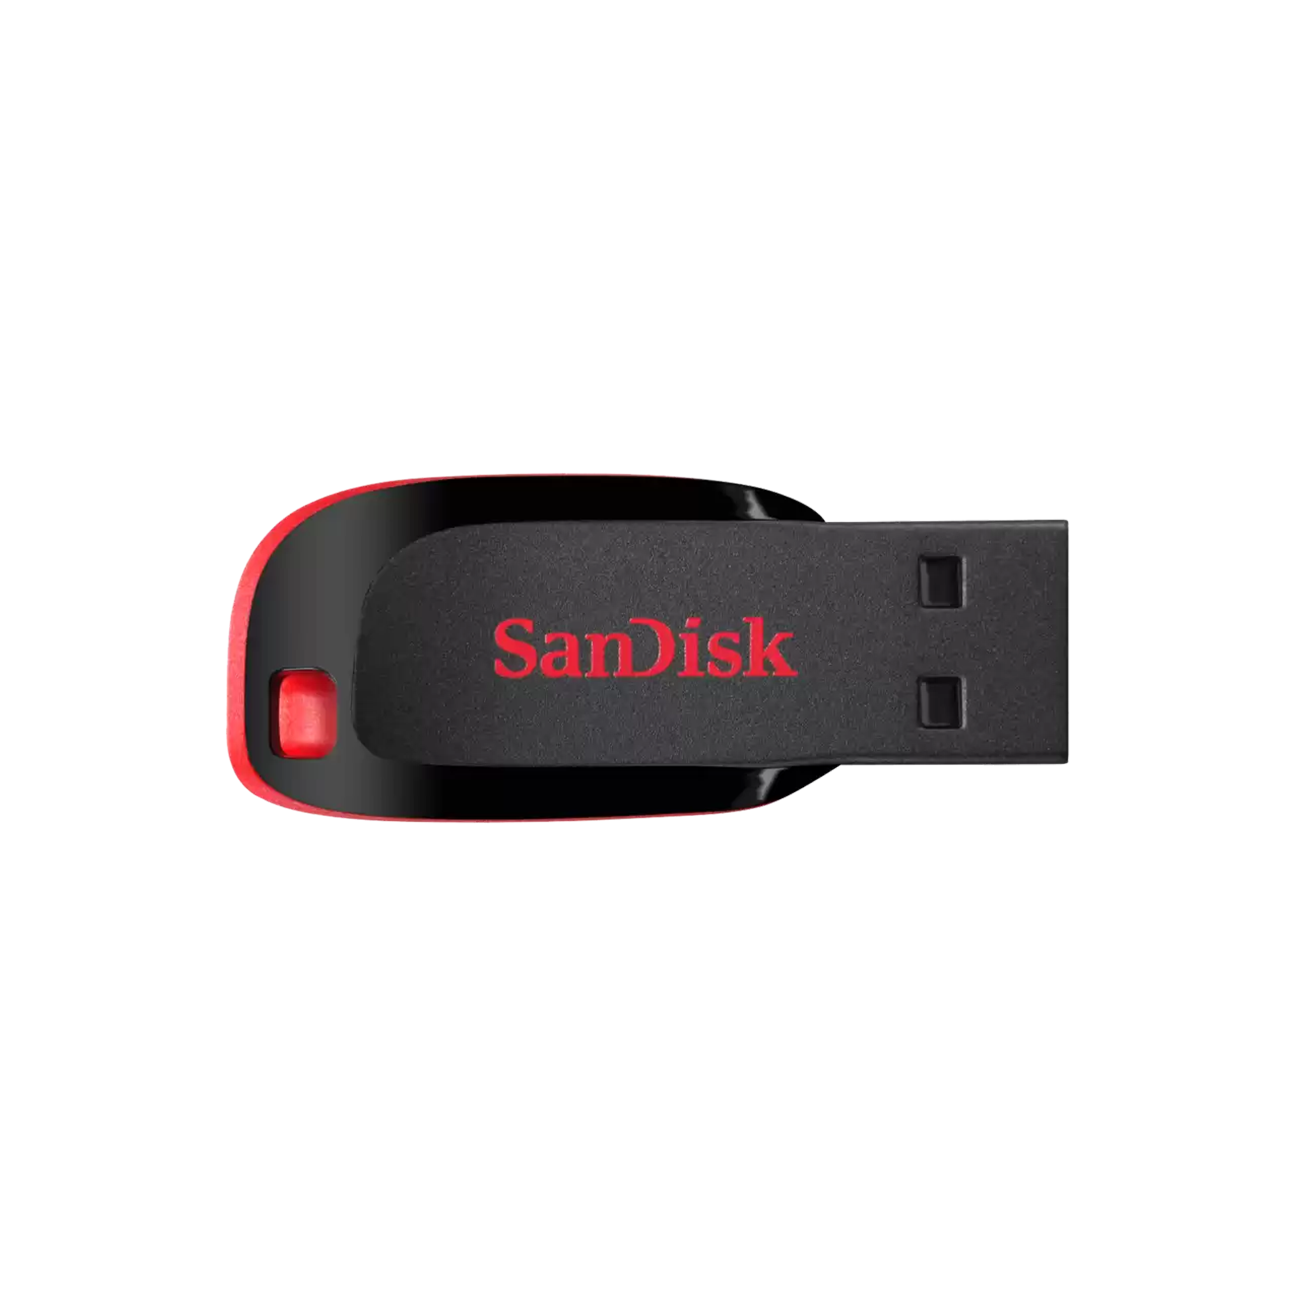 זיכרון נייד SanDisk Cruzer Blade USB 16GB - שנתיים אחריות ע